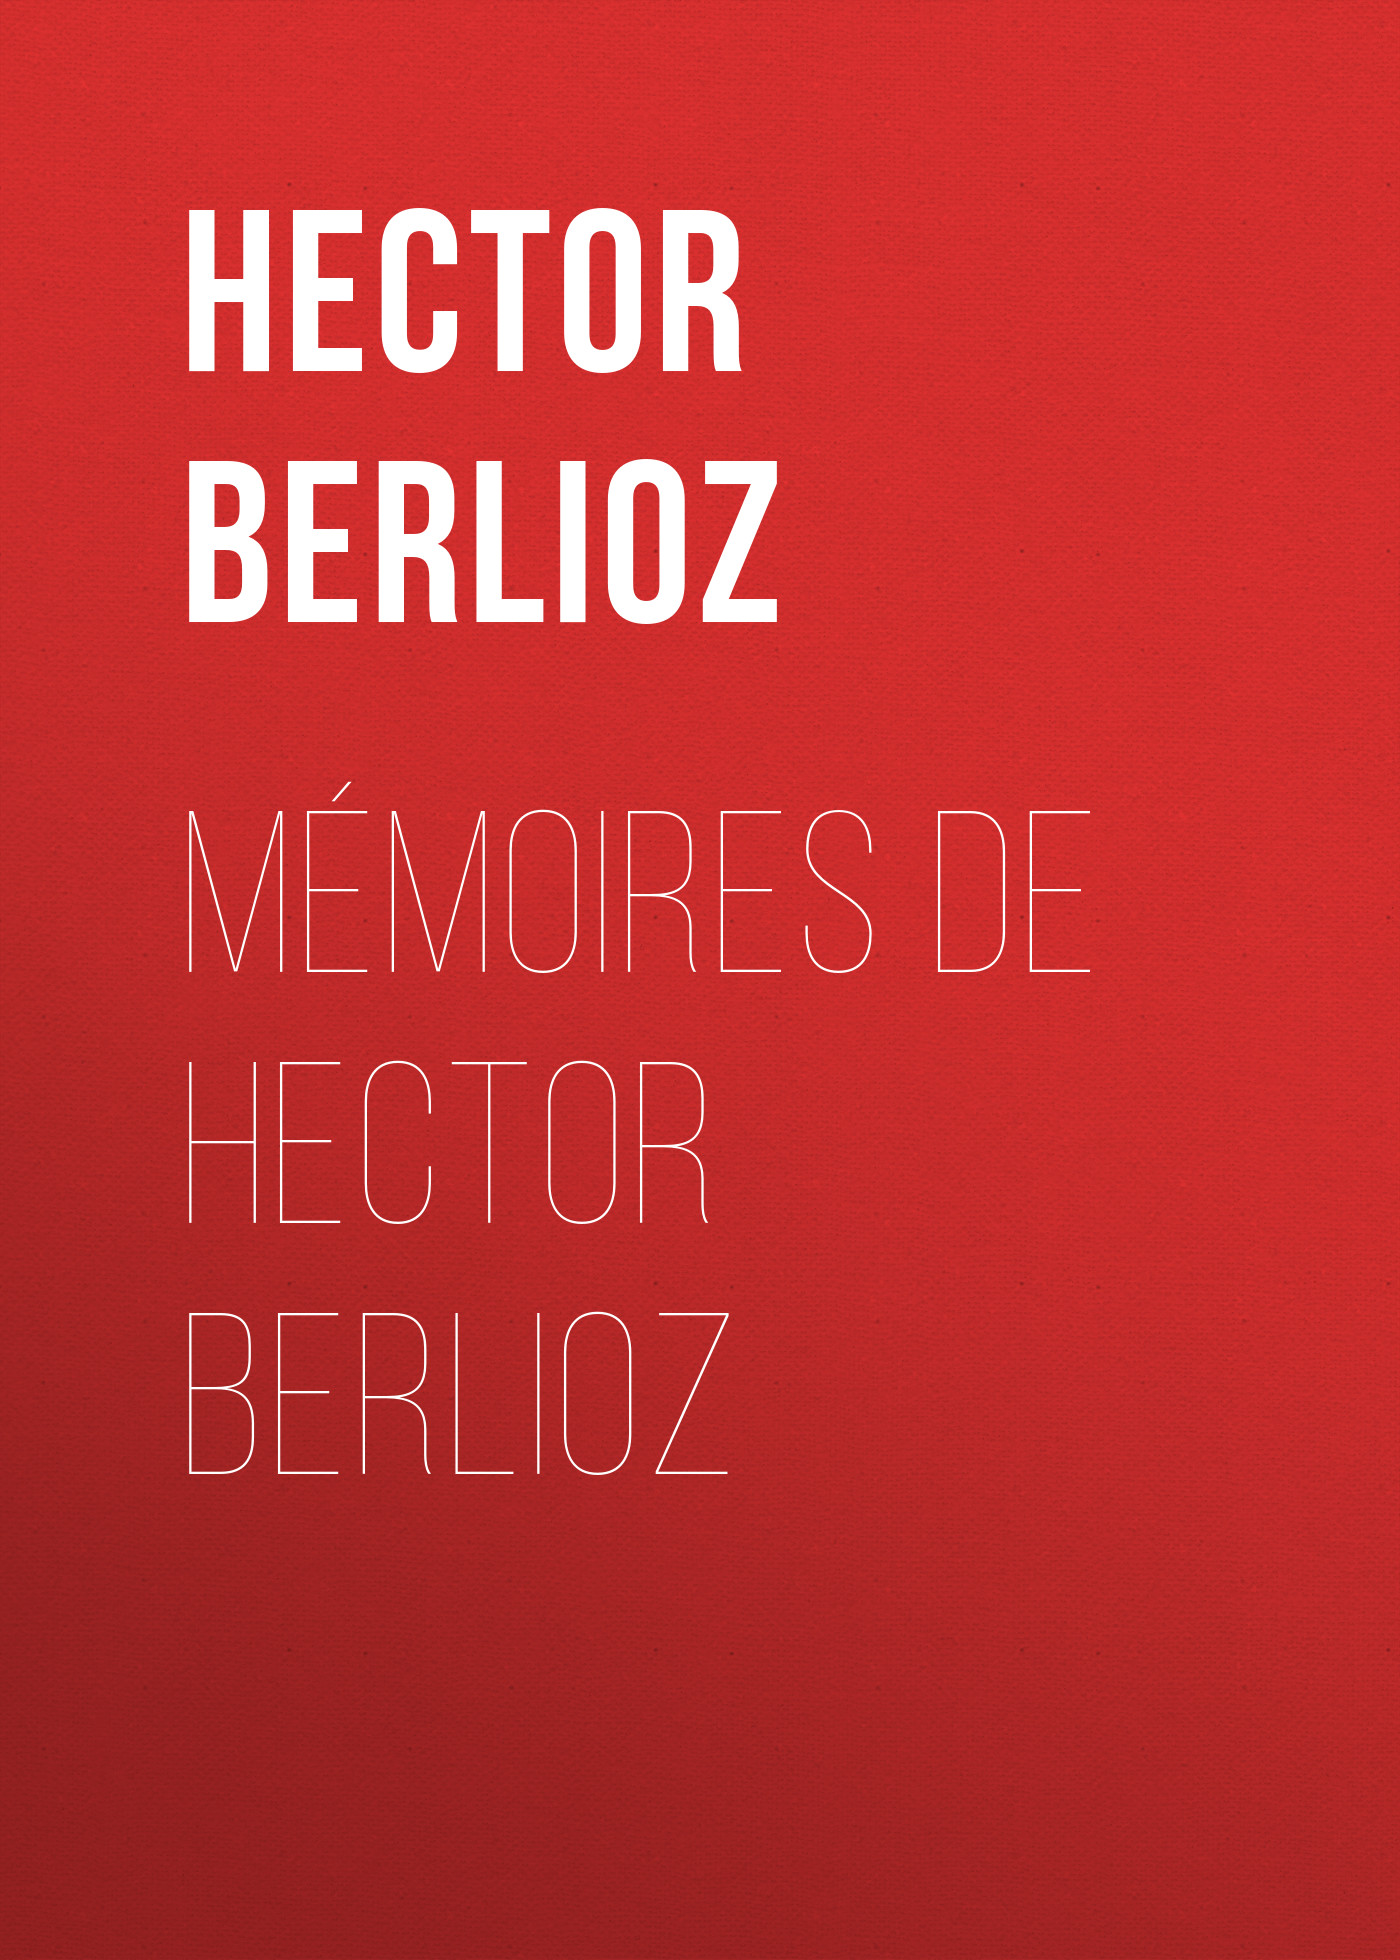 Книга Mémoires de Hector Berlioz из серии , созданная Hector Berlioz, может относится к жанру Зарубежная старинная литература, Зарубежная классика. Стоимость электронной книги Mémoires de Hector Berlioz с идентификатором 24178140 составляет 0 руб.